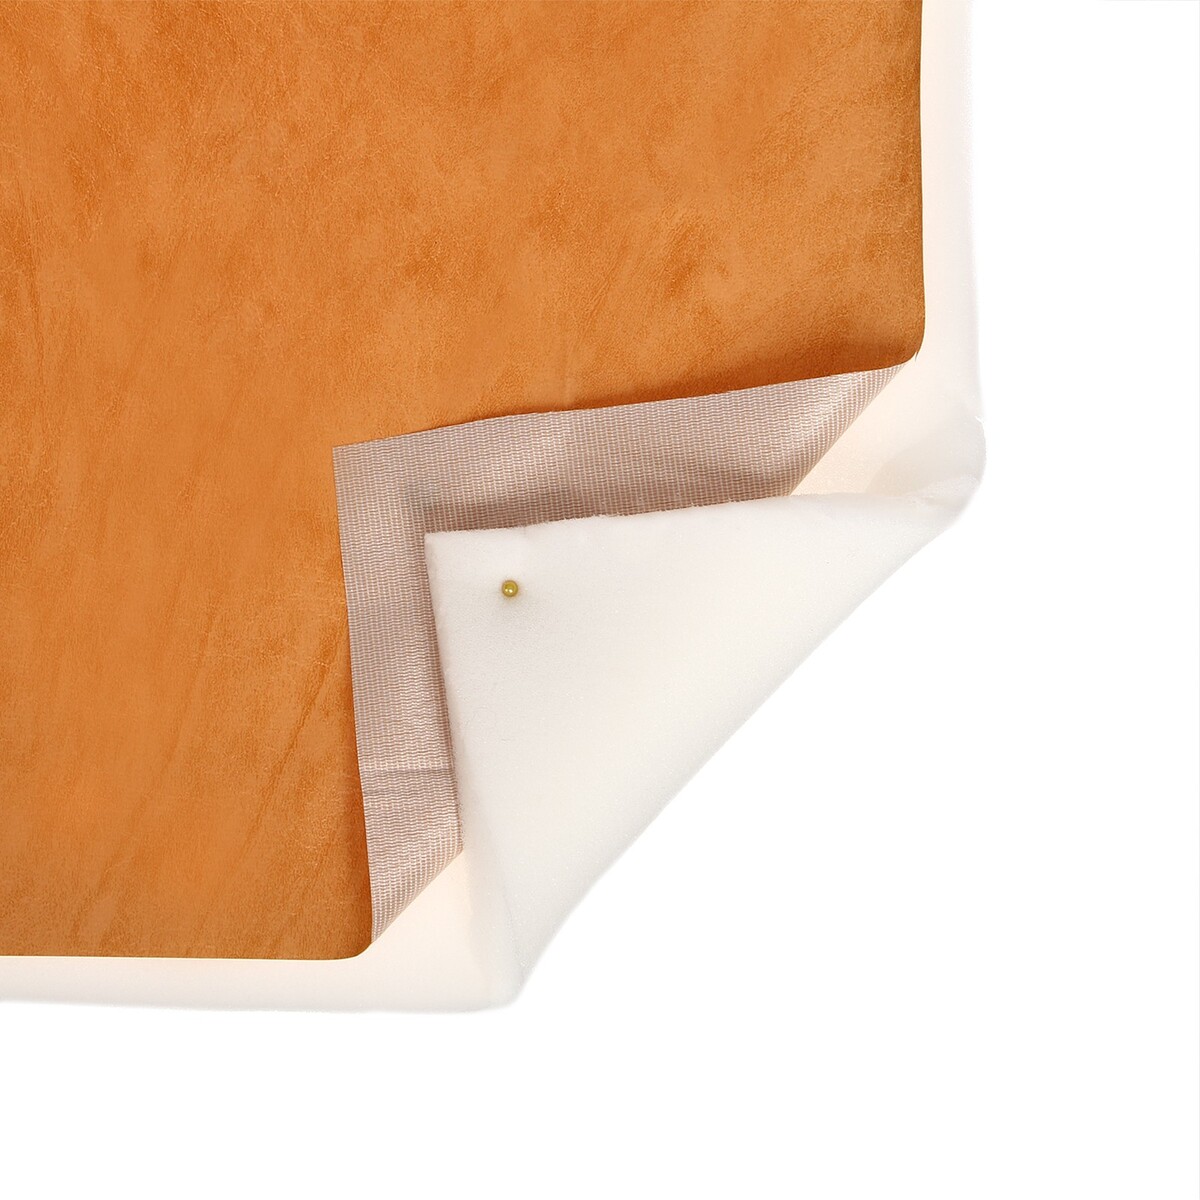 Комплект для перетяжки мебели, 100 × 150 см: иск.кожа, поролон 20 мм, бежевый